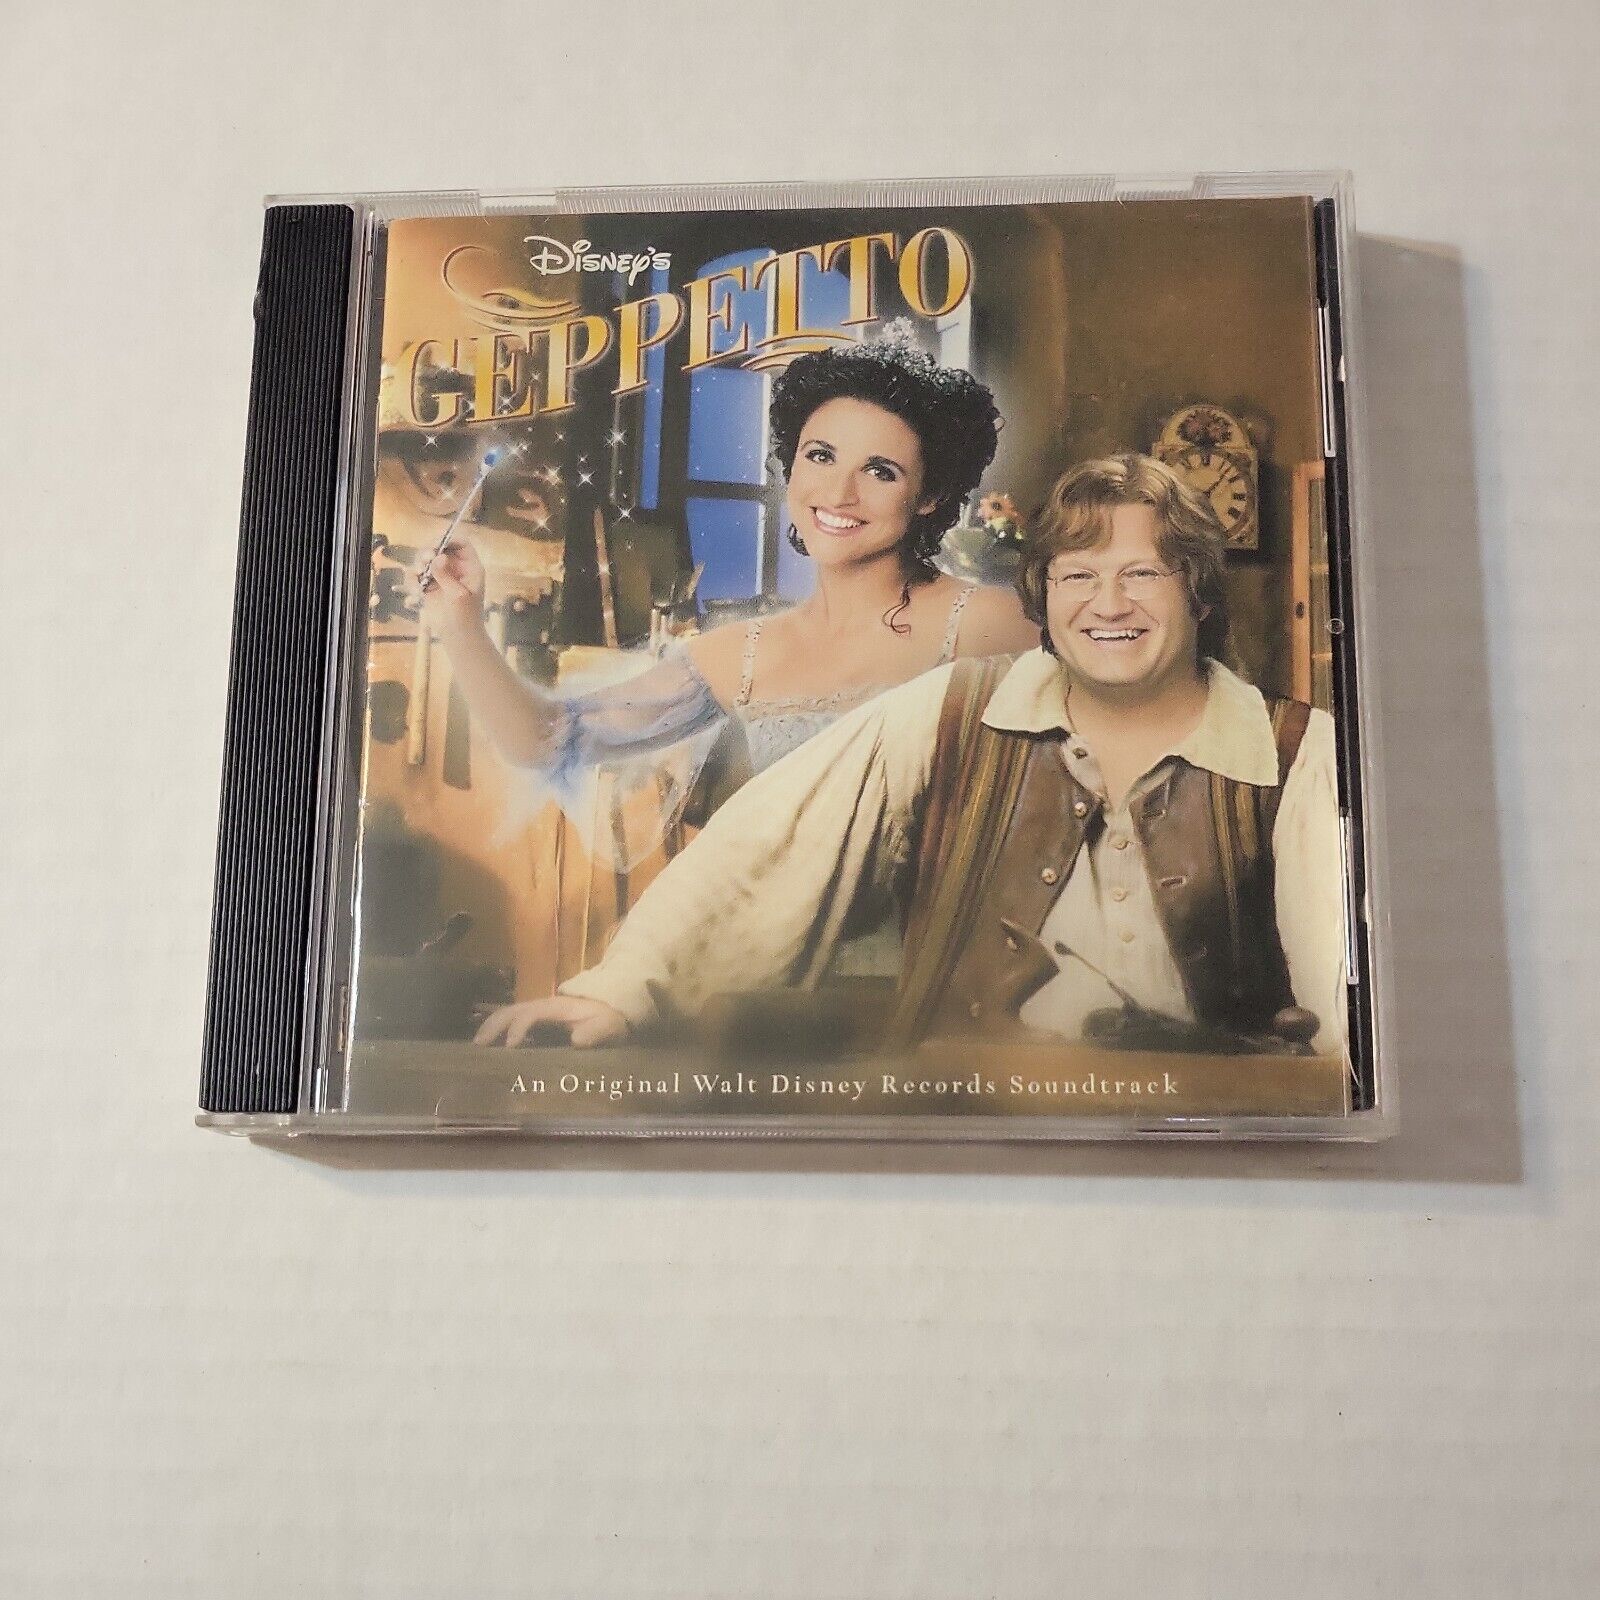 Disney\'s Geppetto An Original Walt Disney Records Soundtrack 2000 CD Drew Carey